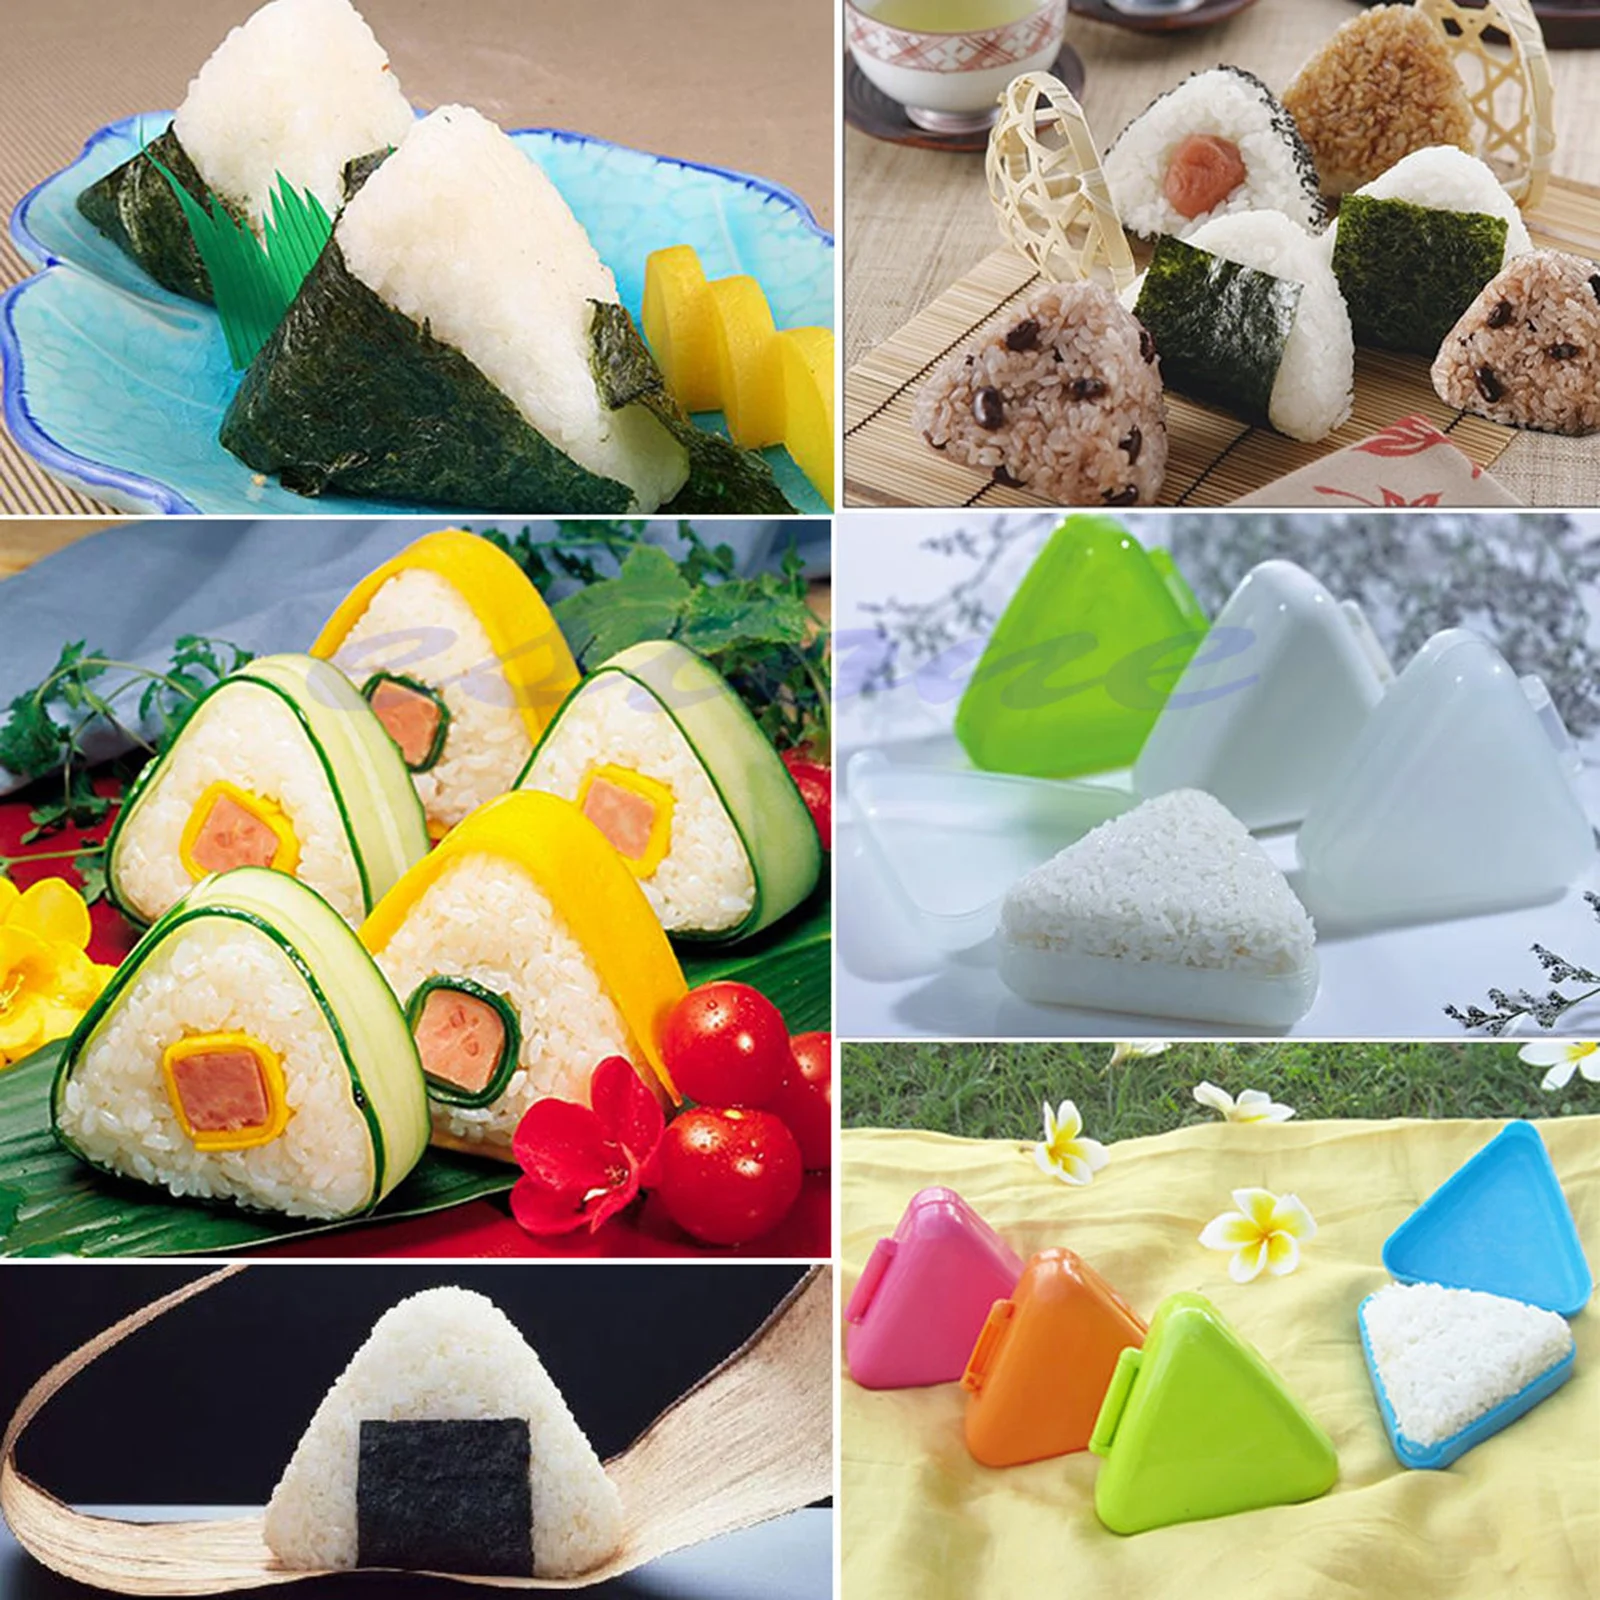 1 шт. кухонные инструменты рисовый рулон формы рисовый онигири мяч бенто пресс производитель Япония еда для кухни инструмент цвет случайный